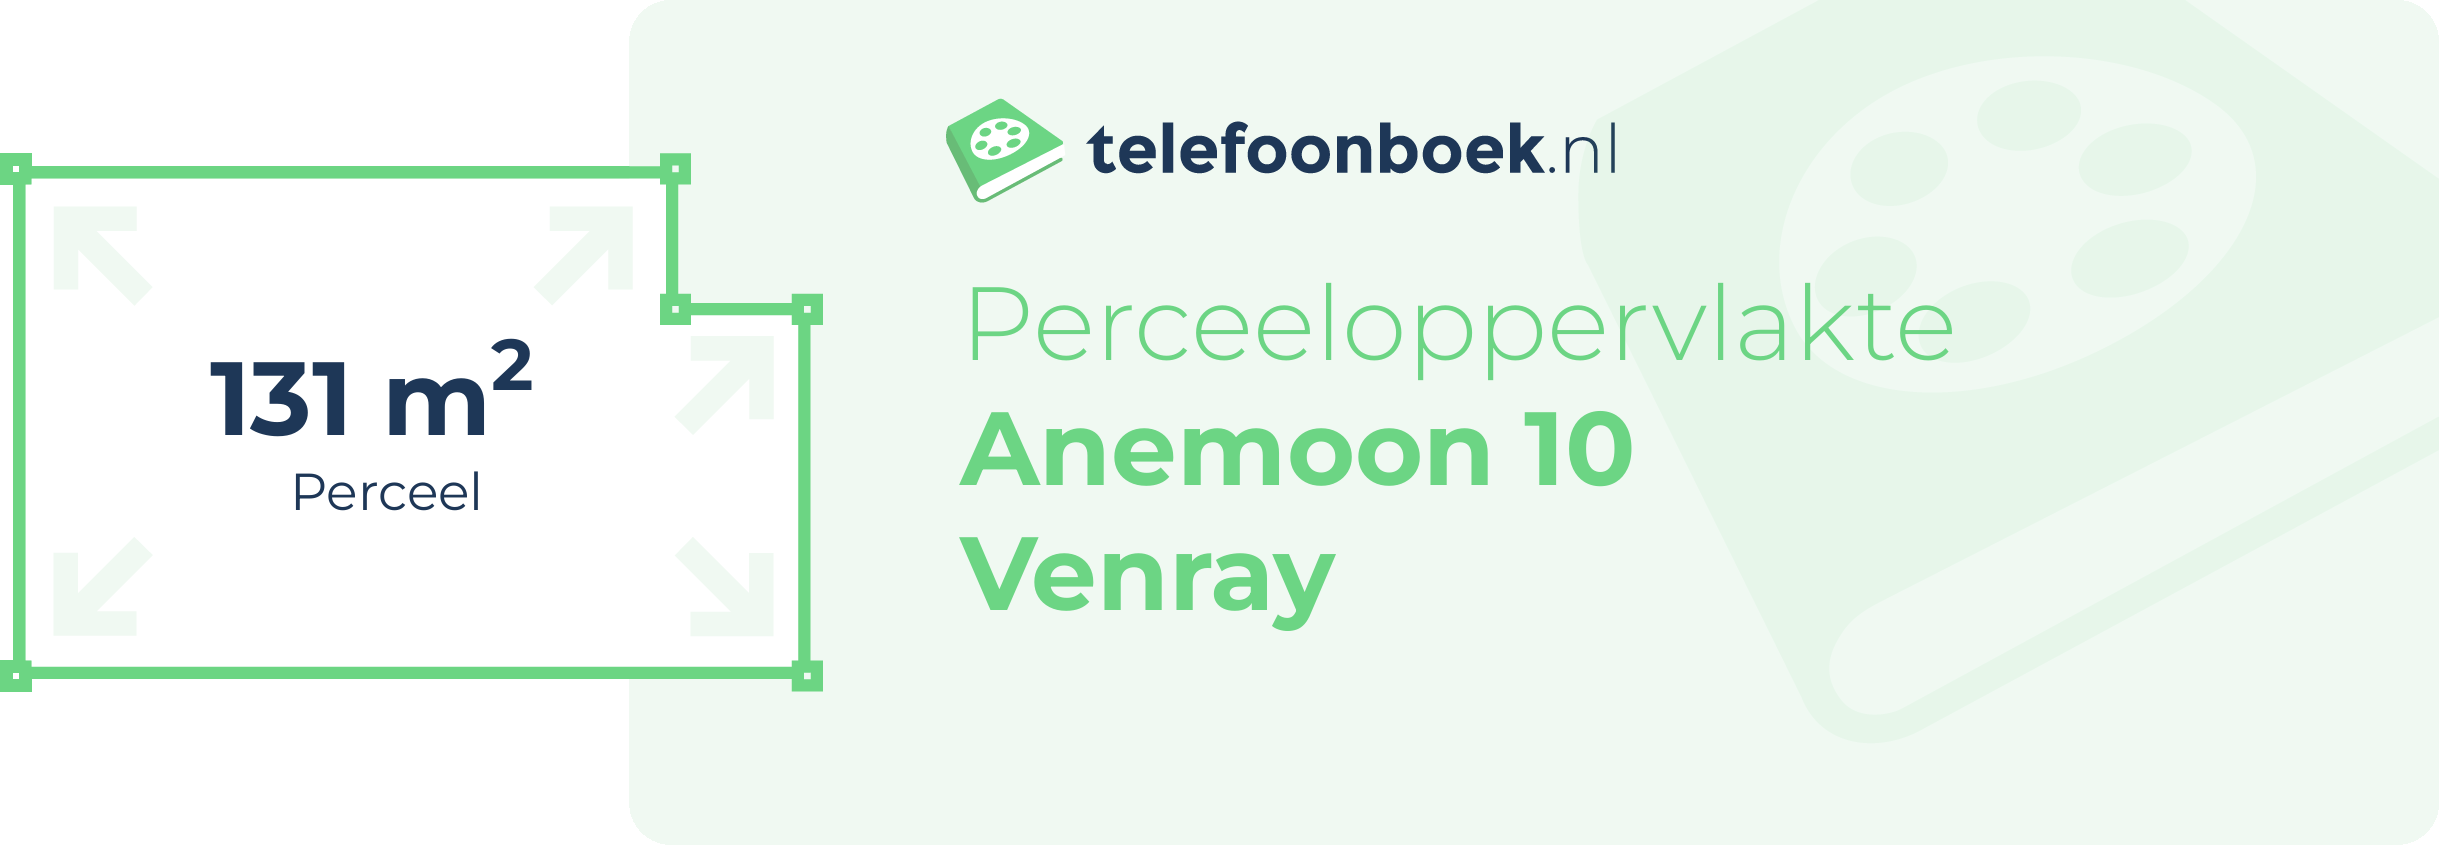 Perceeloppervlakte Anemoon 10 Venray